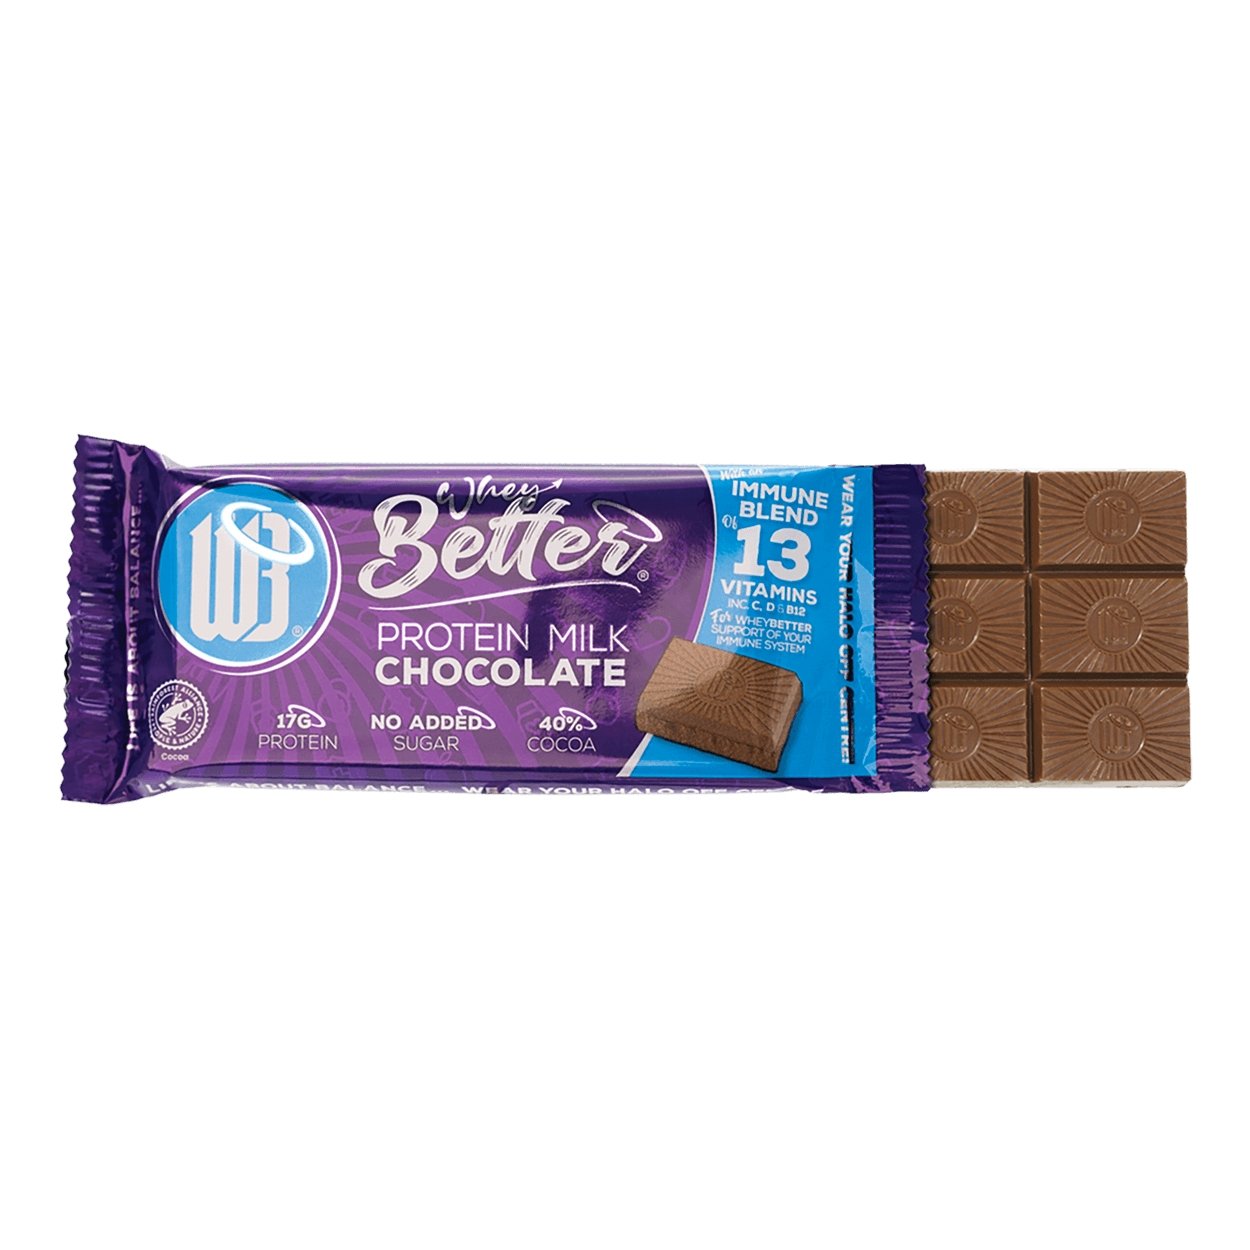 WheyBetter Protein šokoladinis batonėlis - 17 g baltymų - theskinnyfoodco